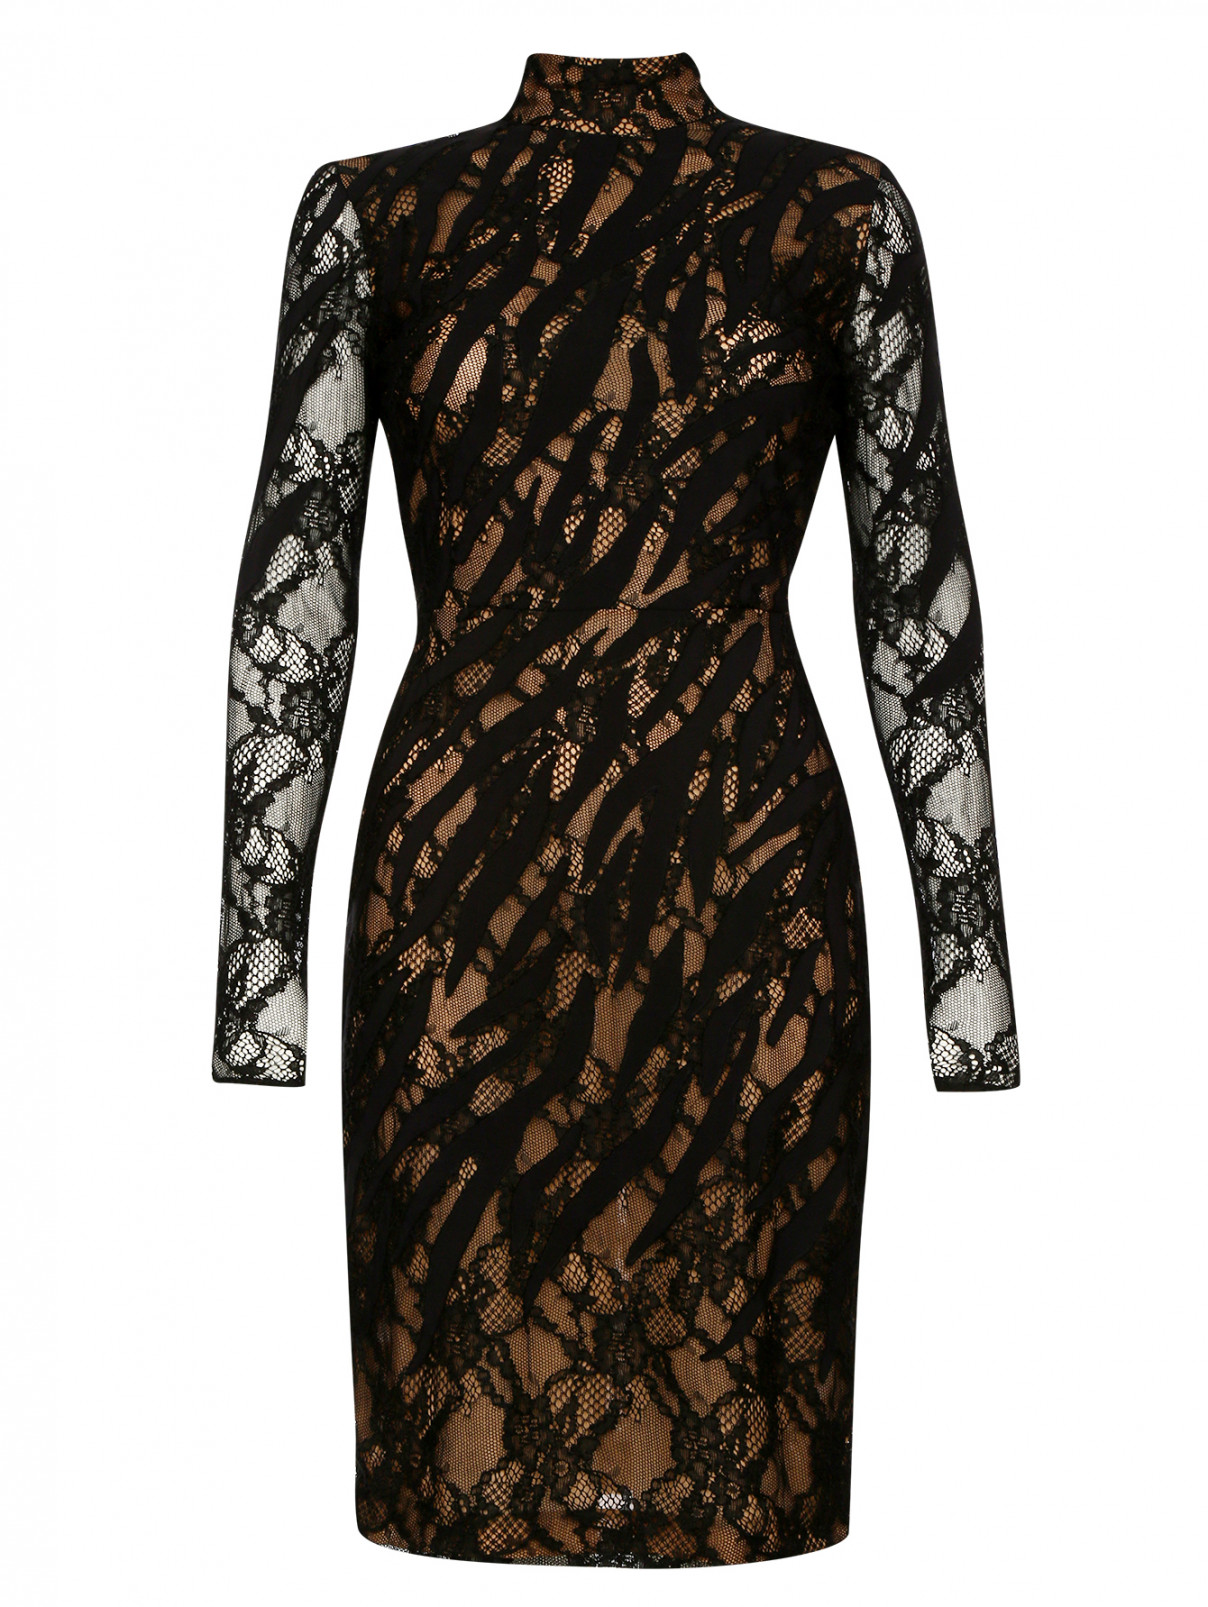 Кружевное платье-футляр Versace 1969  –  Общий вид  – Цвет:  Черный